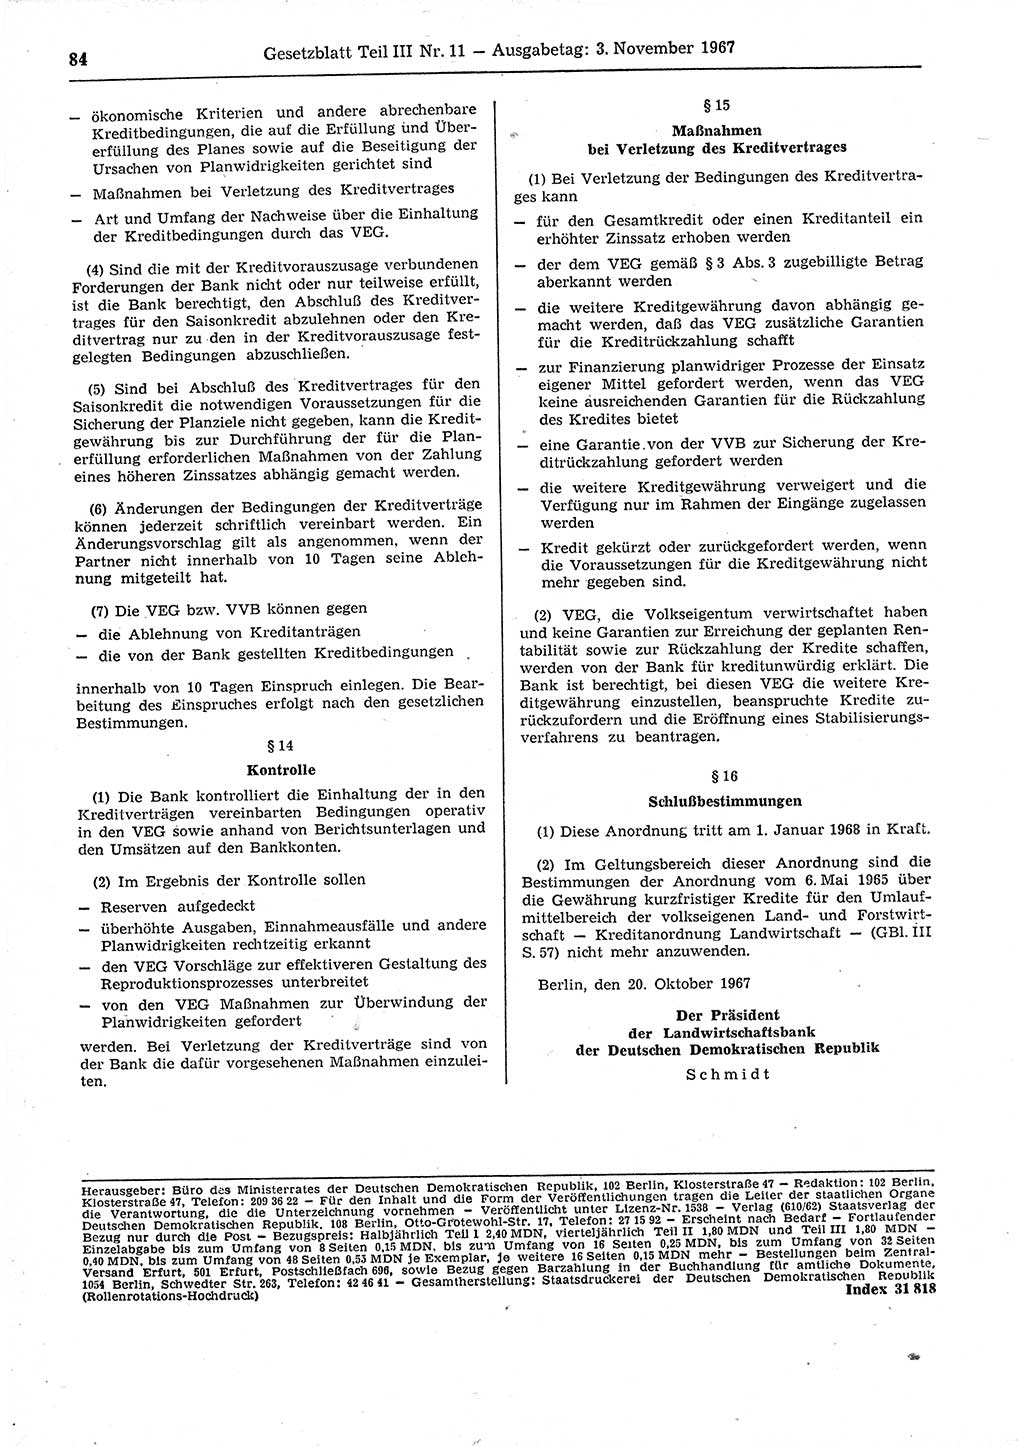 Gesetzblatt (GBl.) der Deutschen Demokratischen Republik (DDR) Teil ⅠⅠⅠ 1967, Seite 84 (GBl. DDR ⅠⅠⅠ 1967, S. 84)